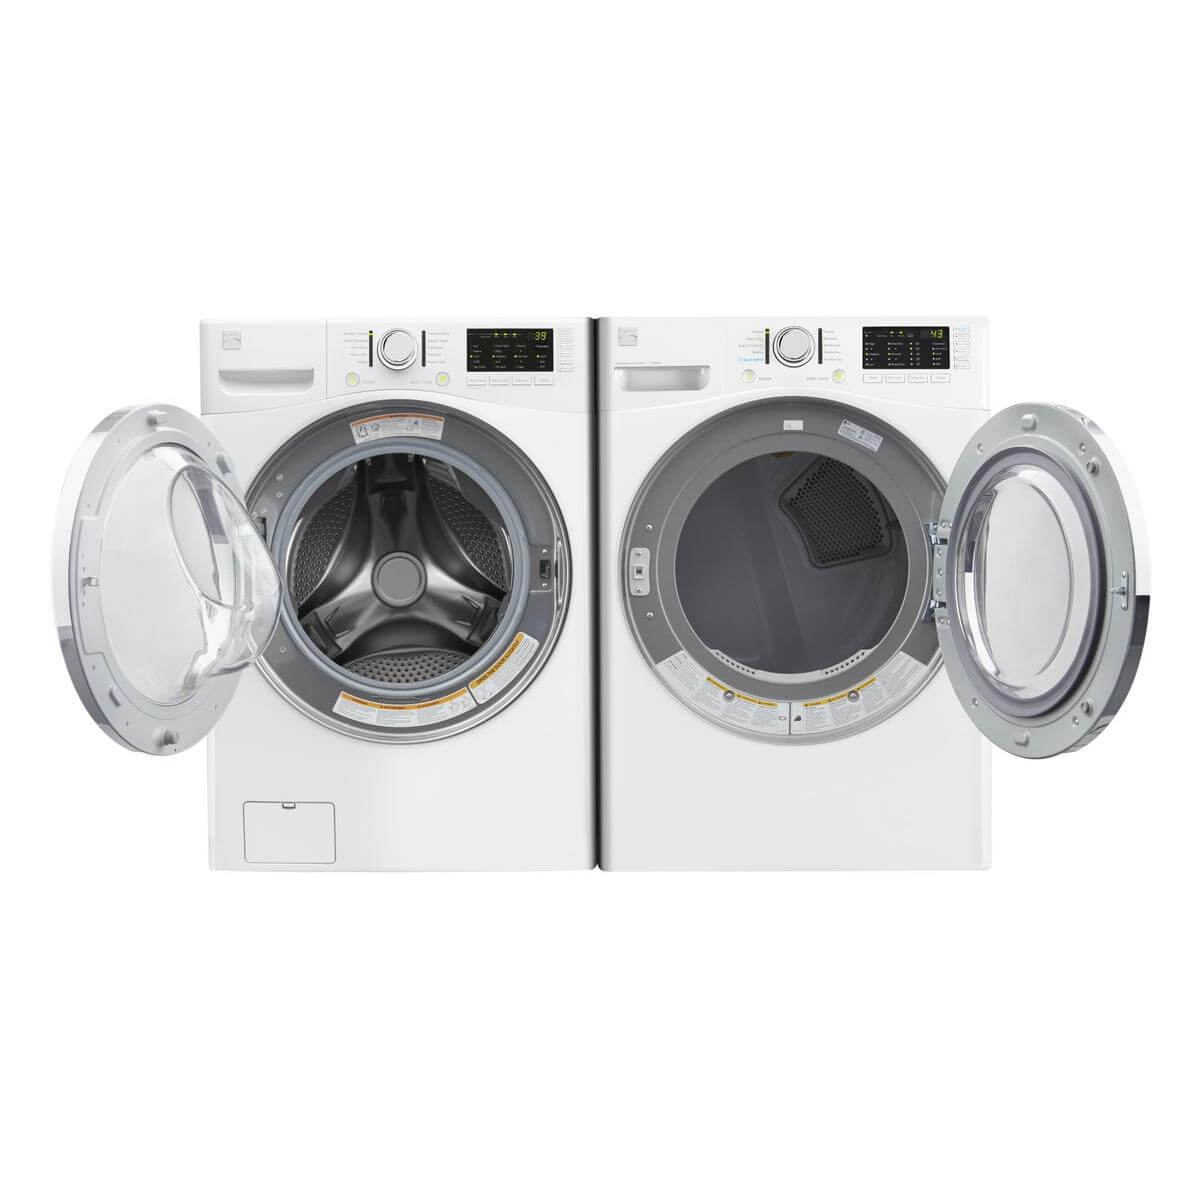 Washer and Dryer Rental $49/month - Premium Appliance Rentals